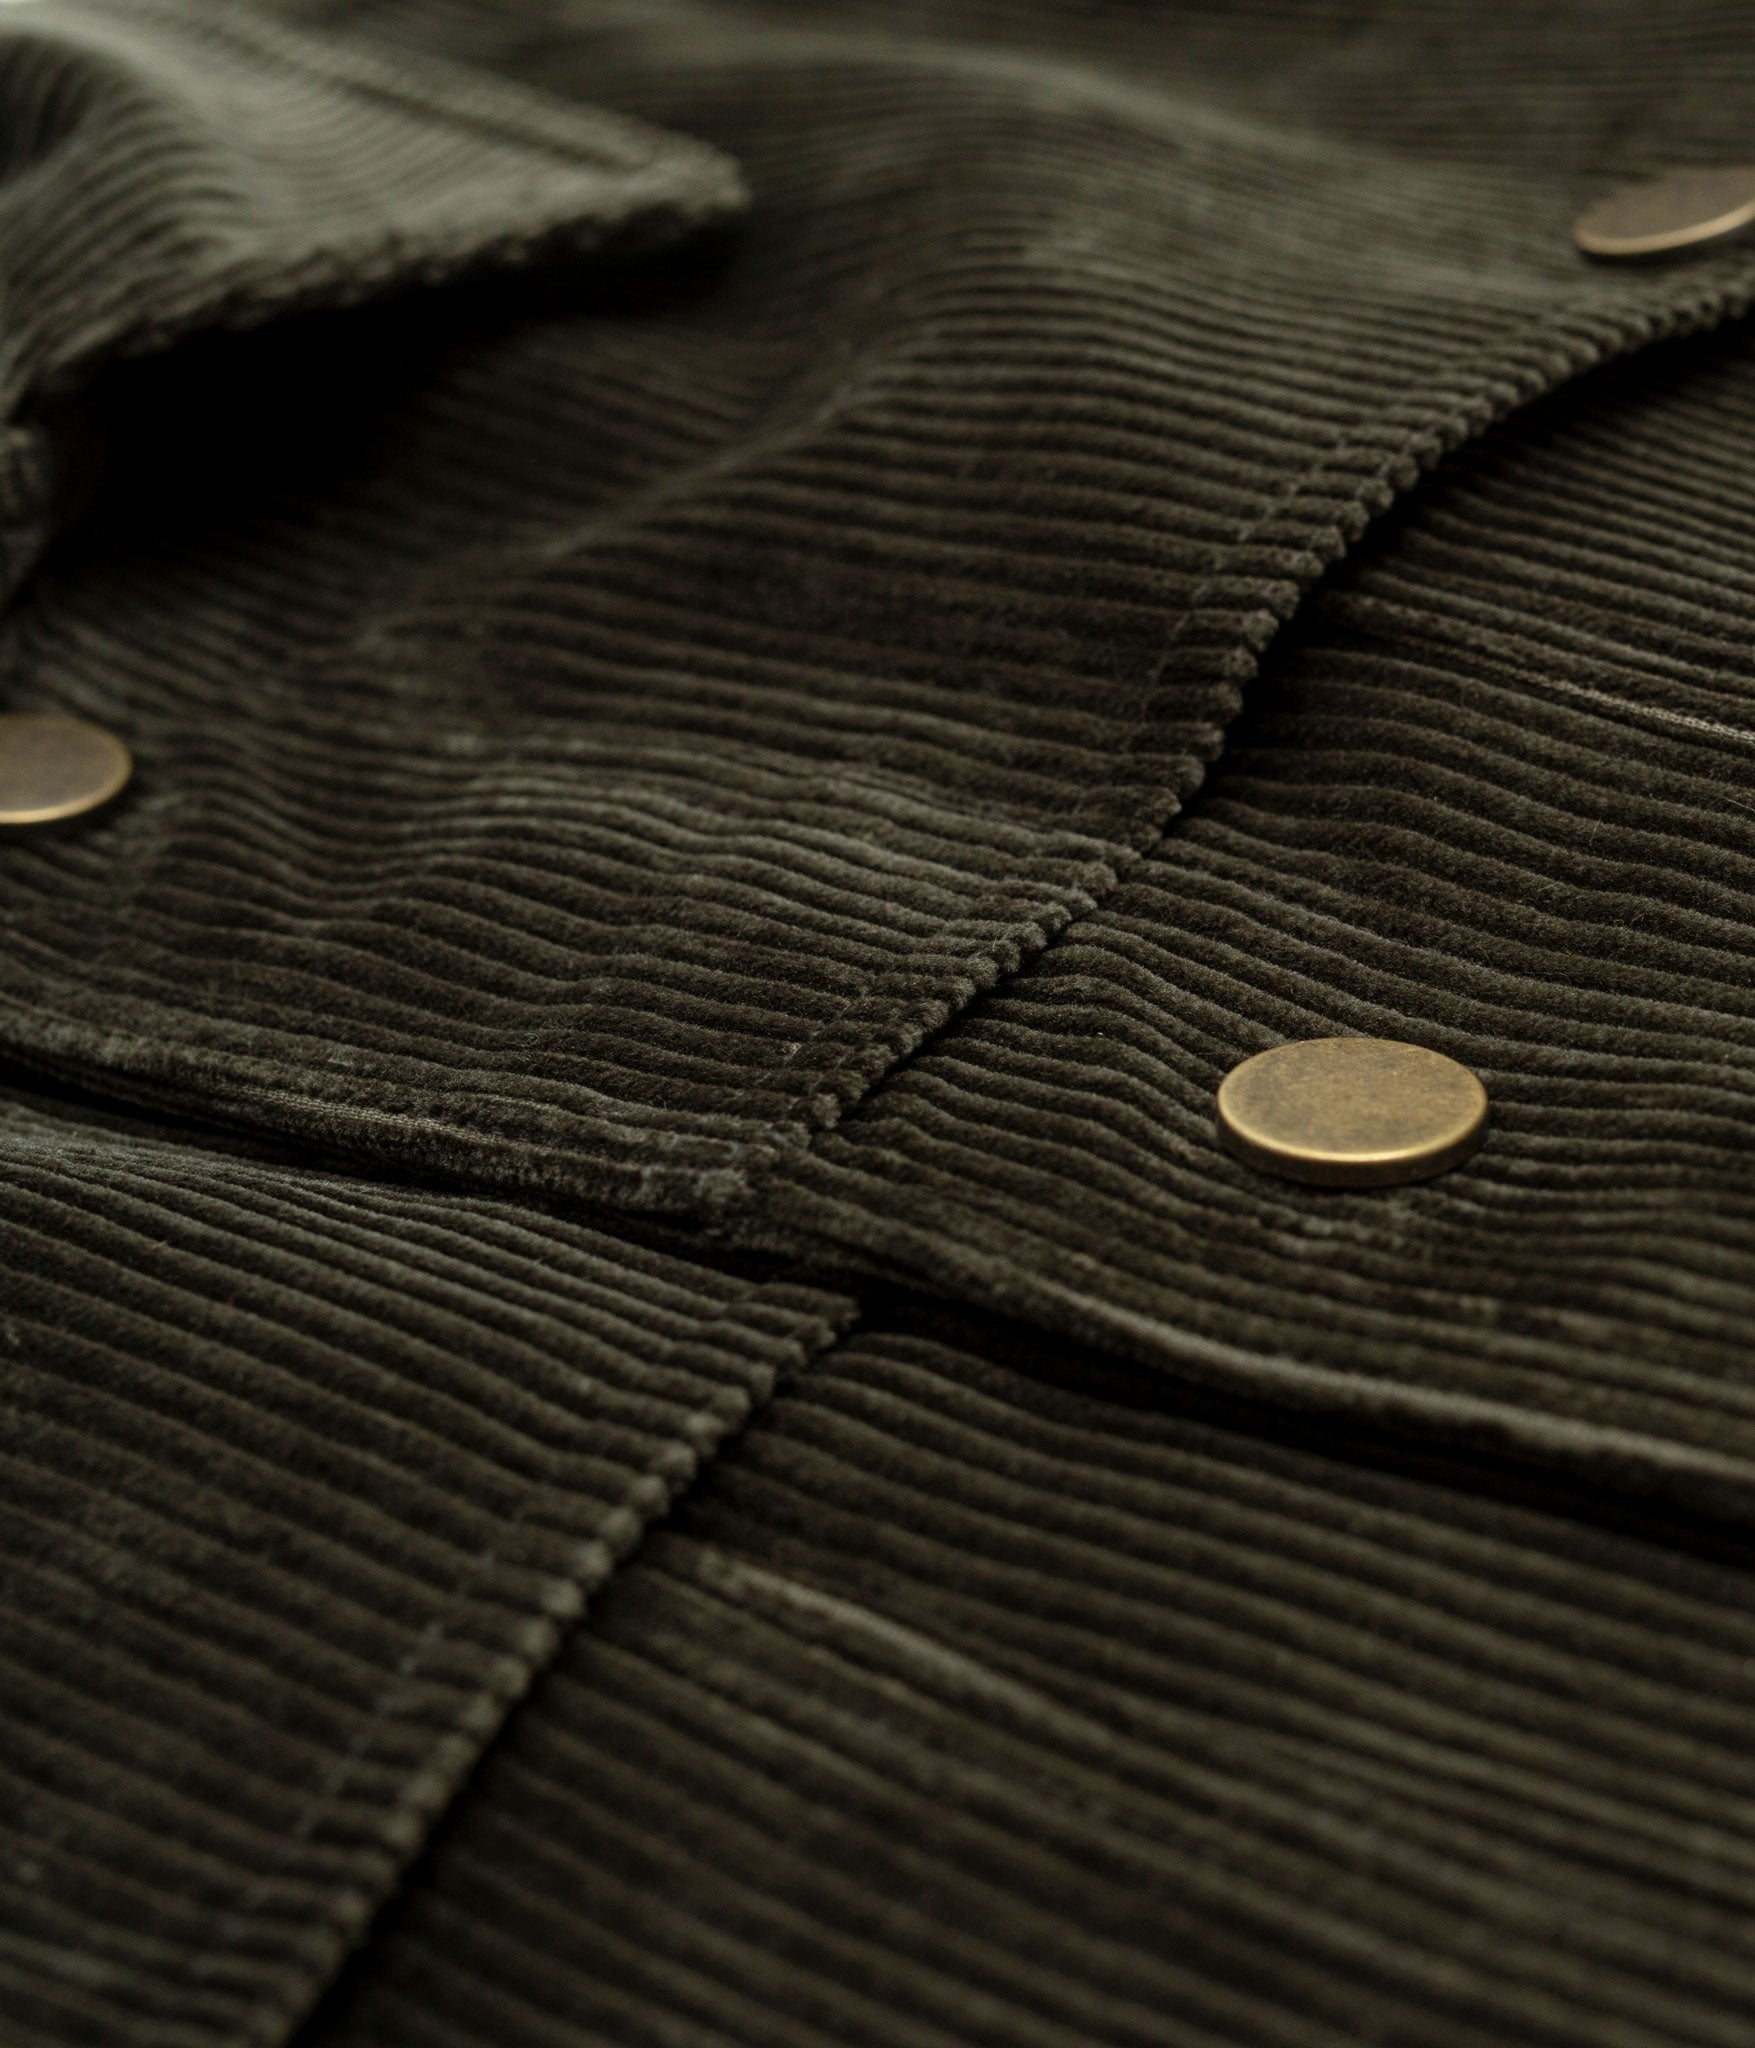 Tonton et Fils - La veste homme «Achille» velours olive - Fabriquée en France - Vue sur la boutonnière